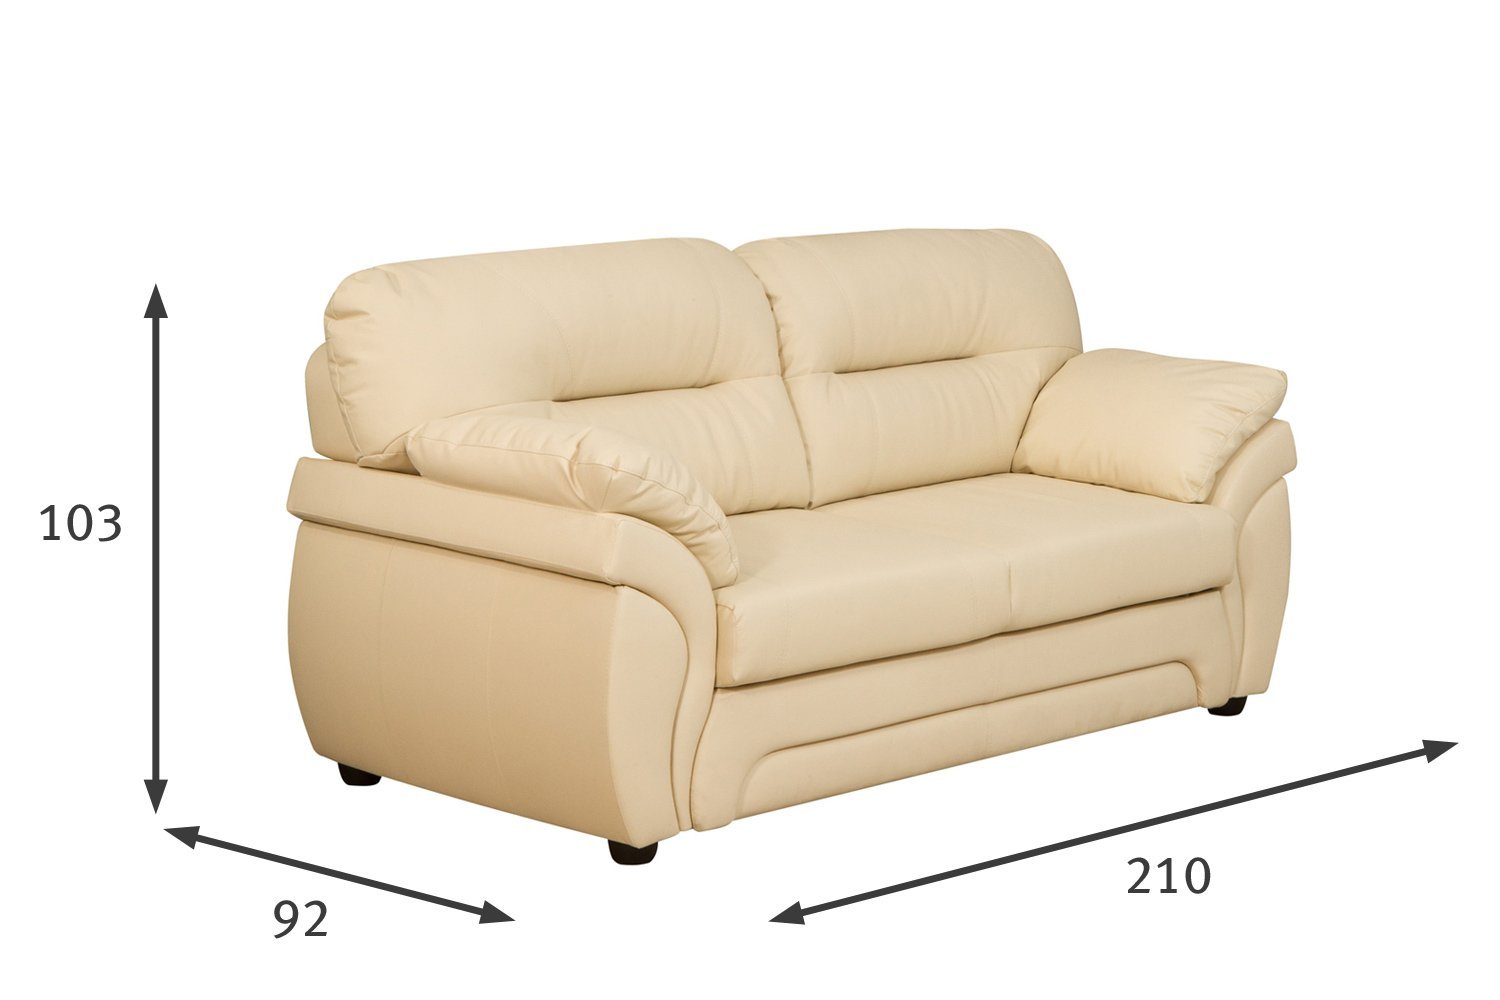 размеры дивана бристоль много мебели